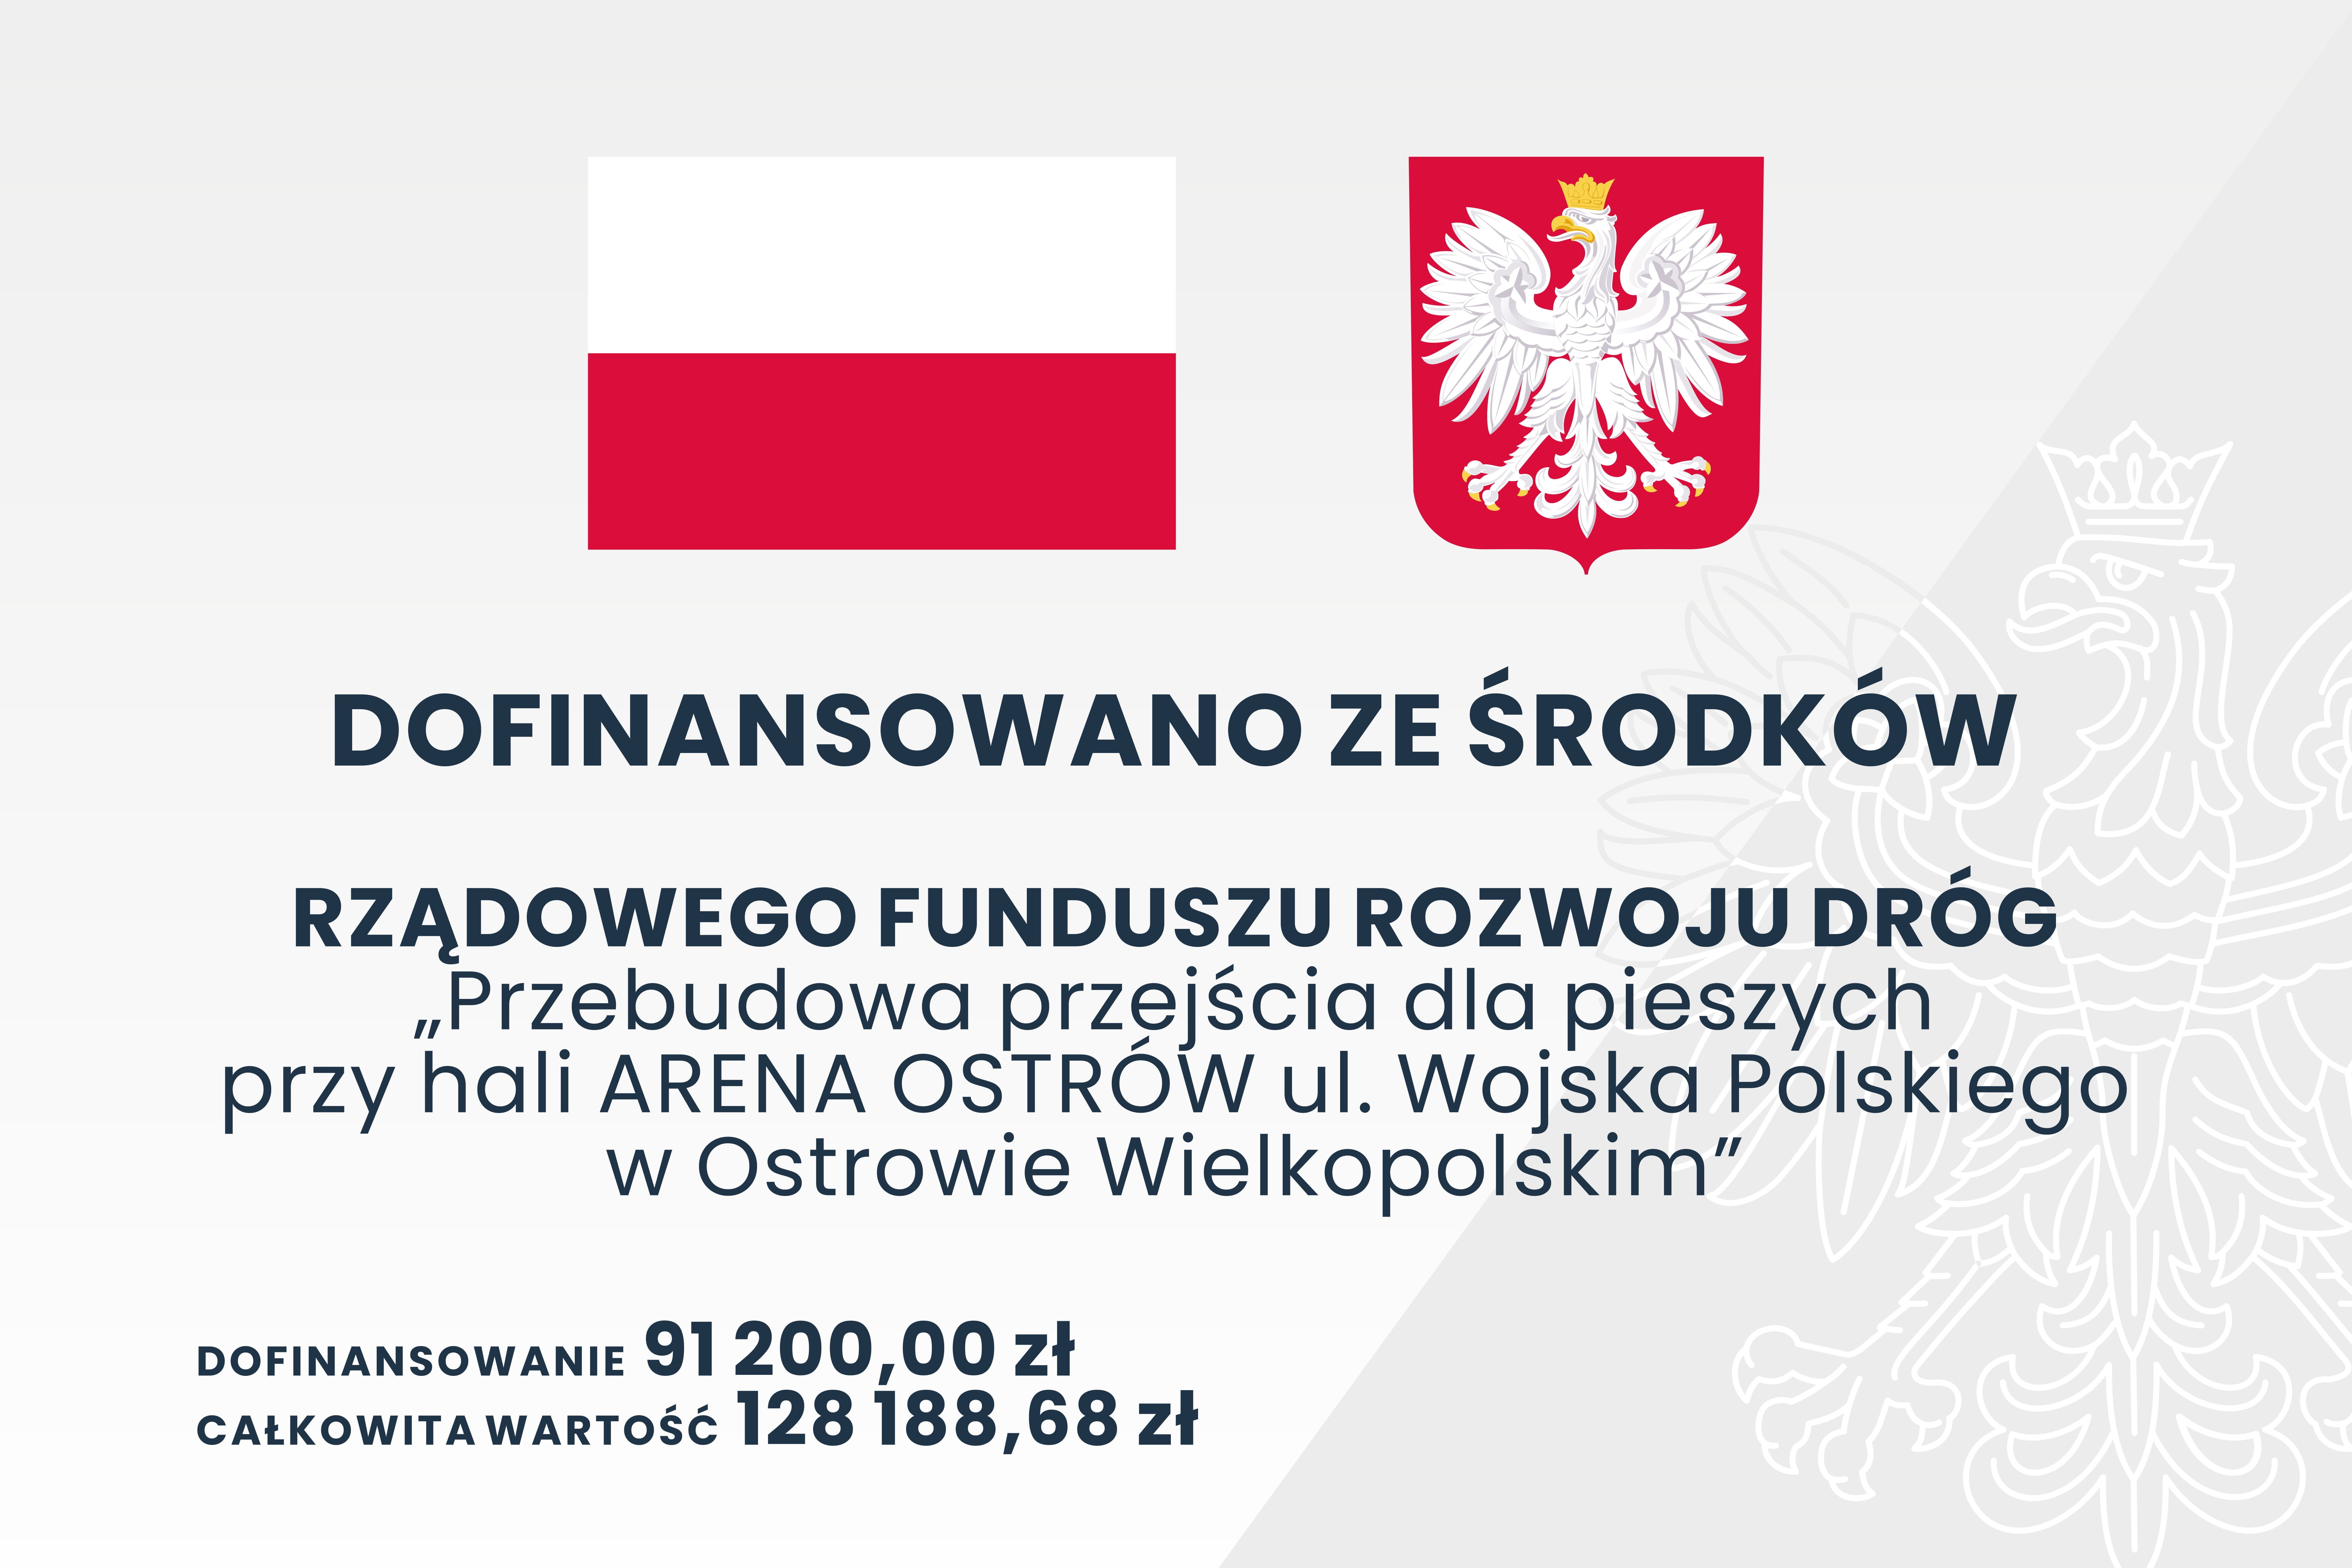 Baner dotyczący projektu rzebudowa przejścia dla pieszych przy hali ARENA OSTRÓW ul. Wojska Polskiego w Ostrowie Wielkopolskim